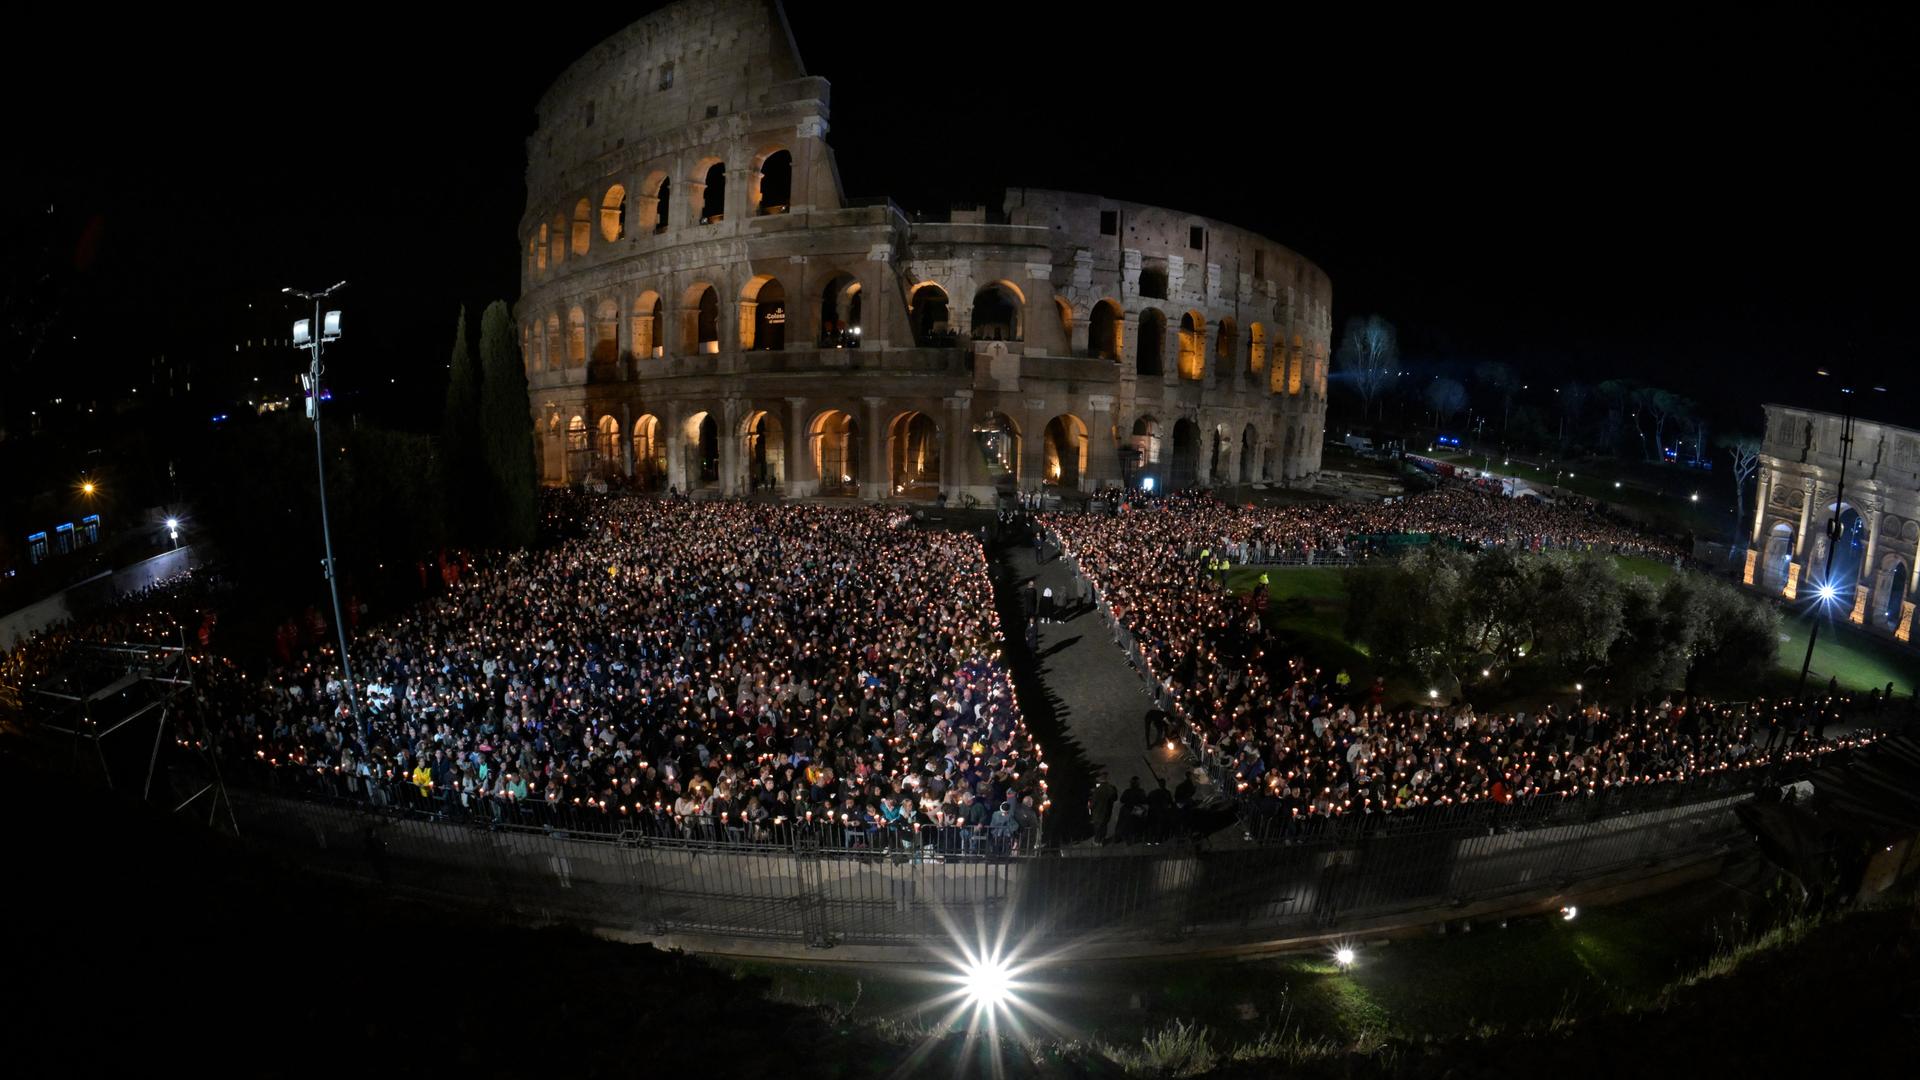 Tausende Menschen haben sich in Rom vor dem erleuchteten Kolosseum versammelt. Viele von ihnen halten Kerzen in der Hand.